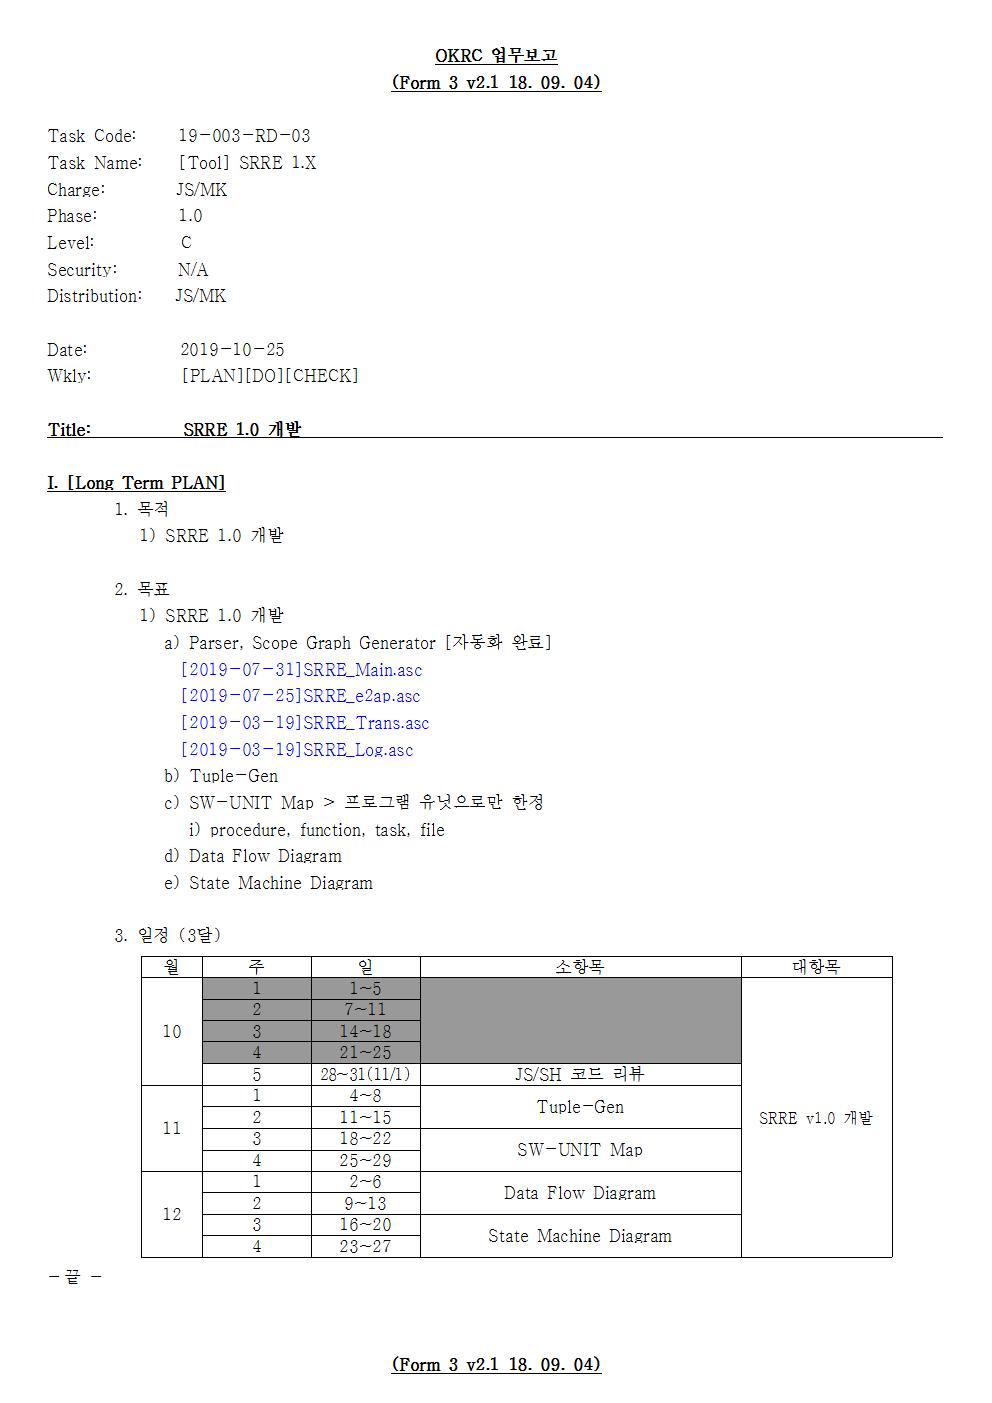 D-[19-003-RD-03]-[Tool-SRRE-1.0]-[2019-10-25][JS]-[19-10-4]-[P+D+C]001.jpg